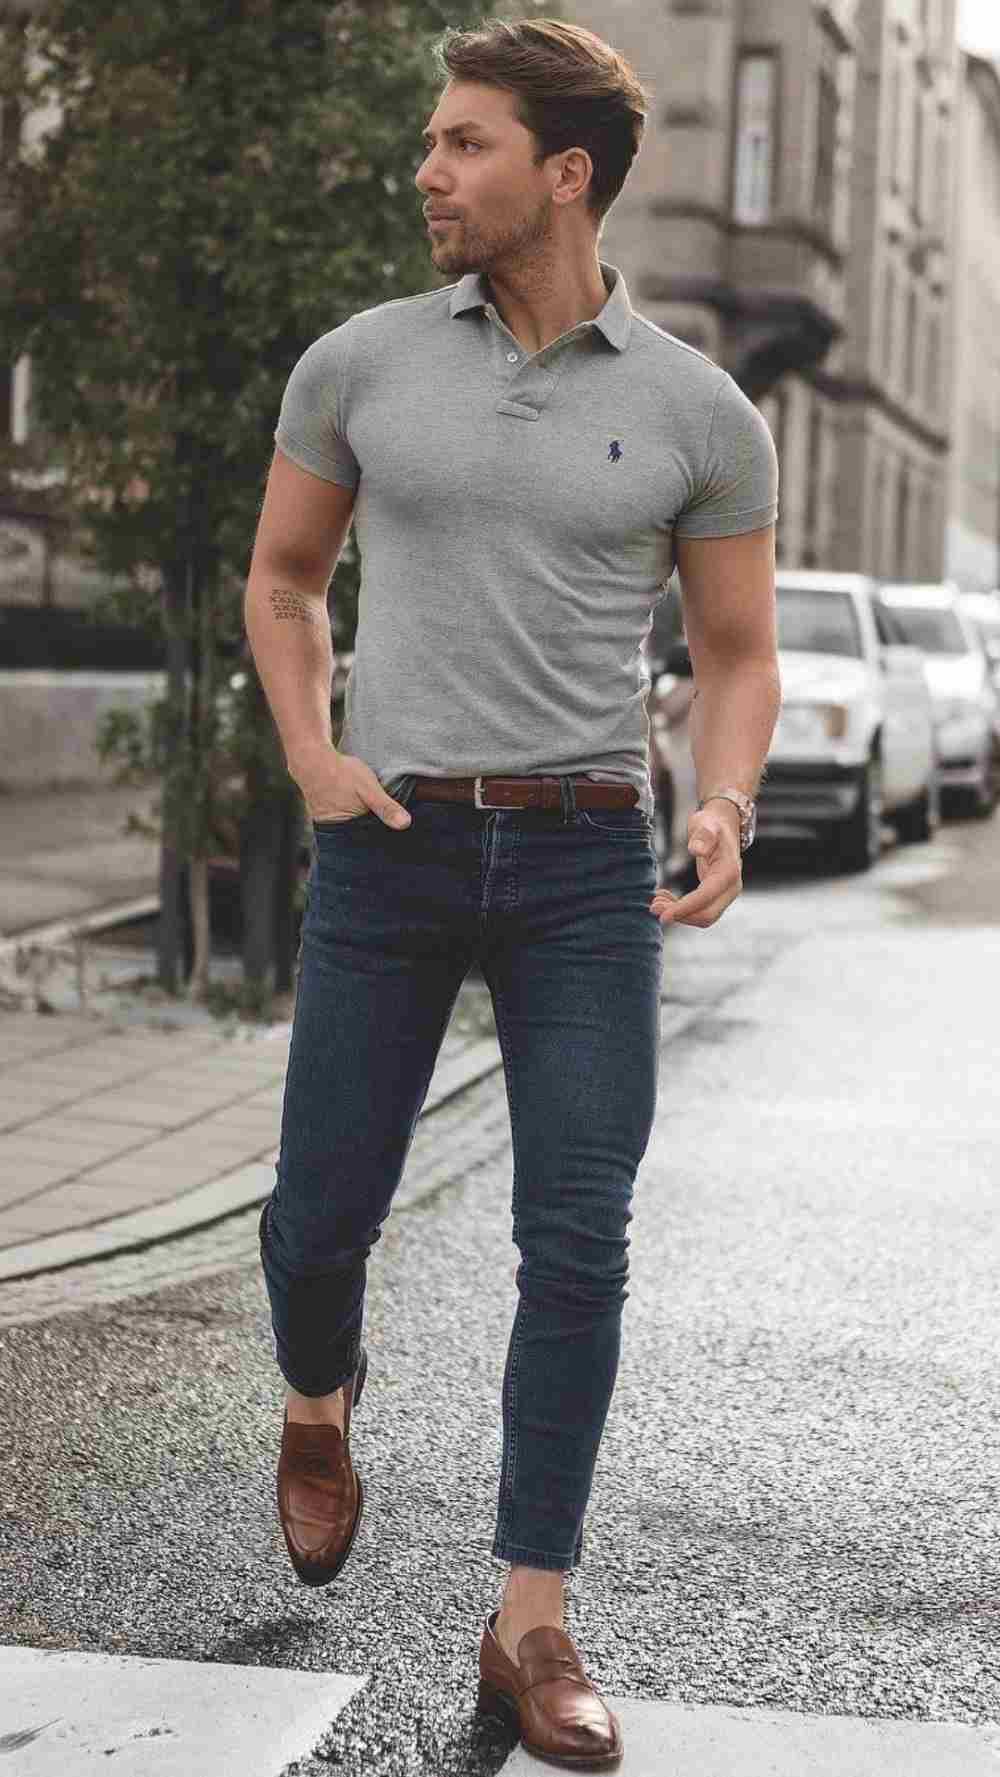 legeres casual friday poloshirt outfit mann mit engen jeans und derbyschuhen auf der straße